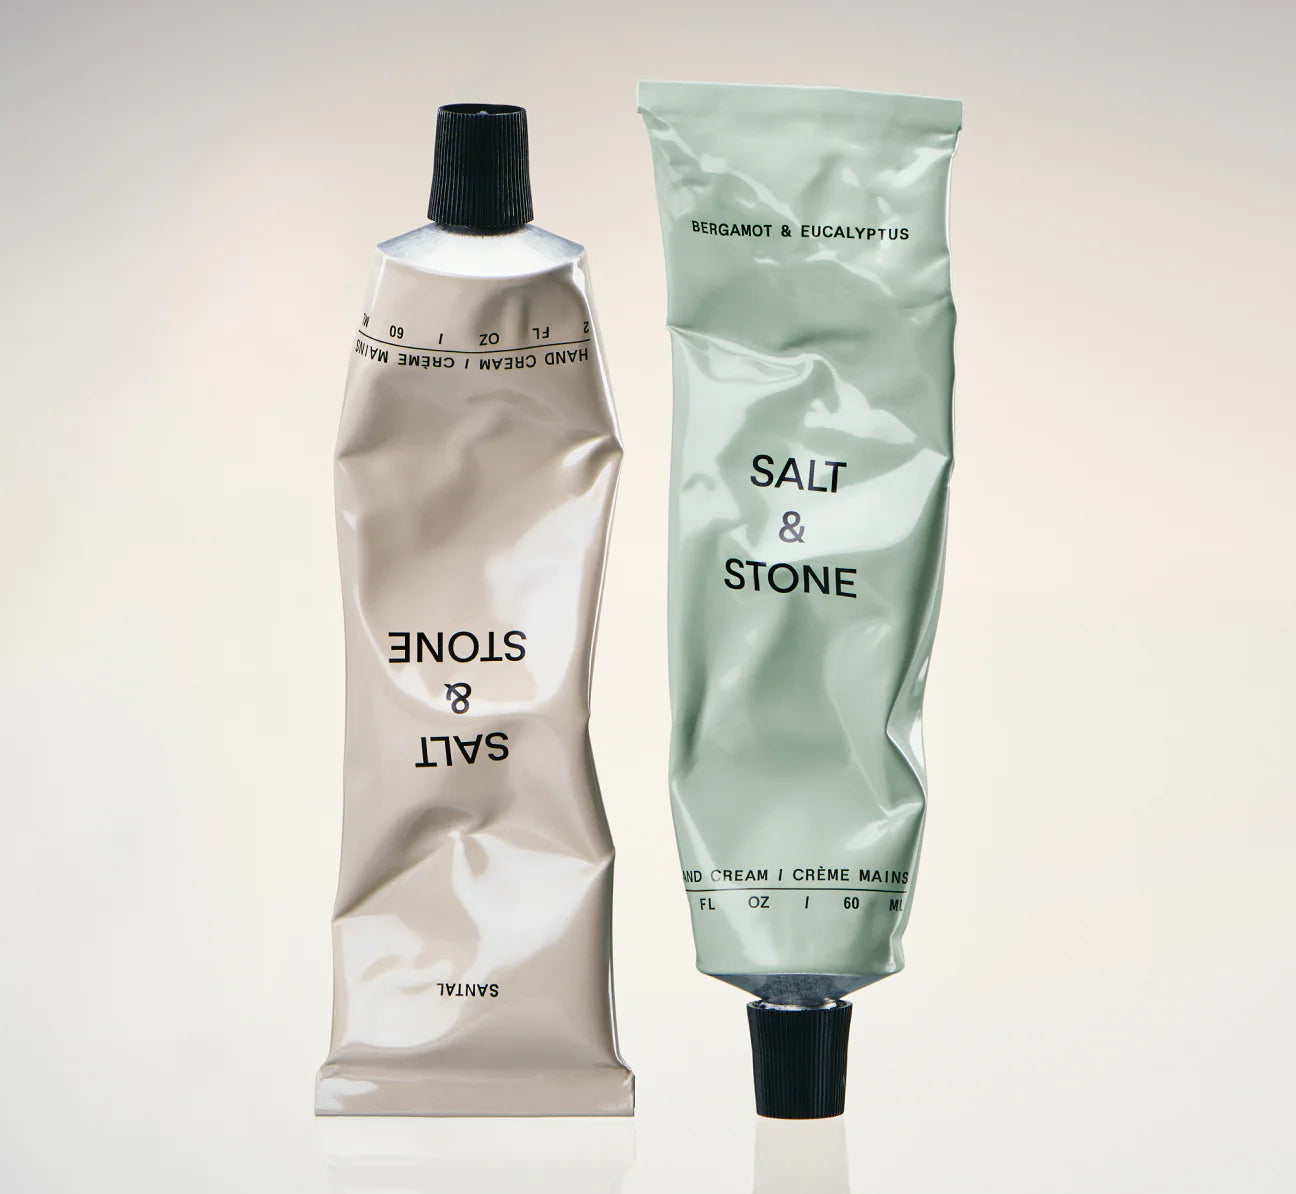 SALT & STONE Hand Cream - Santal